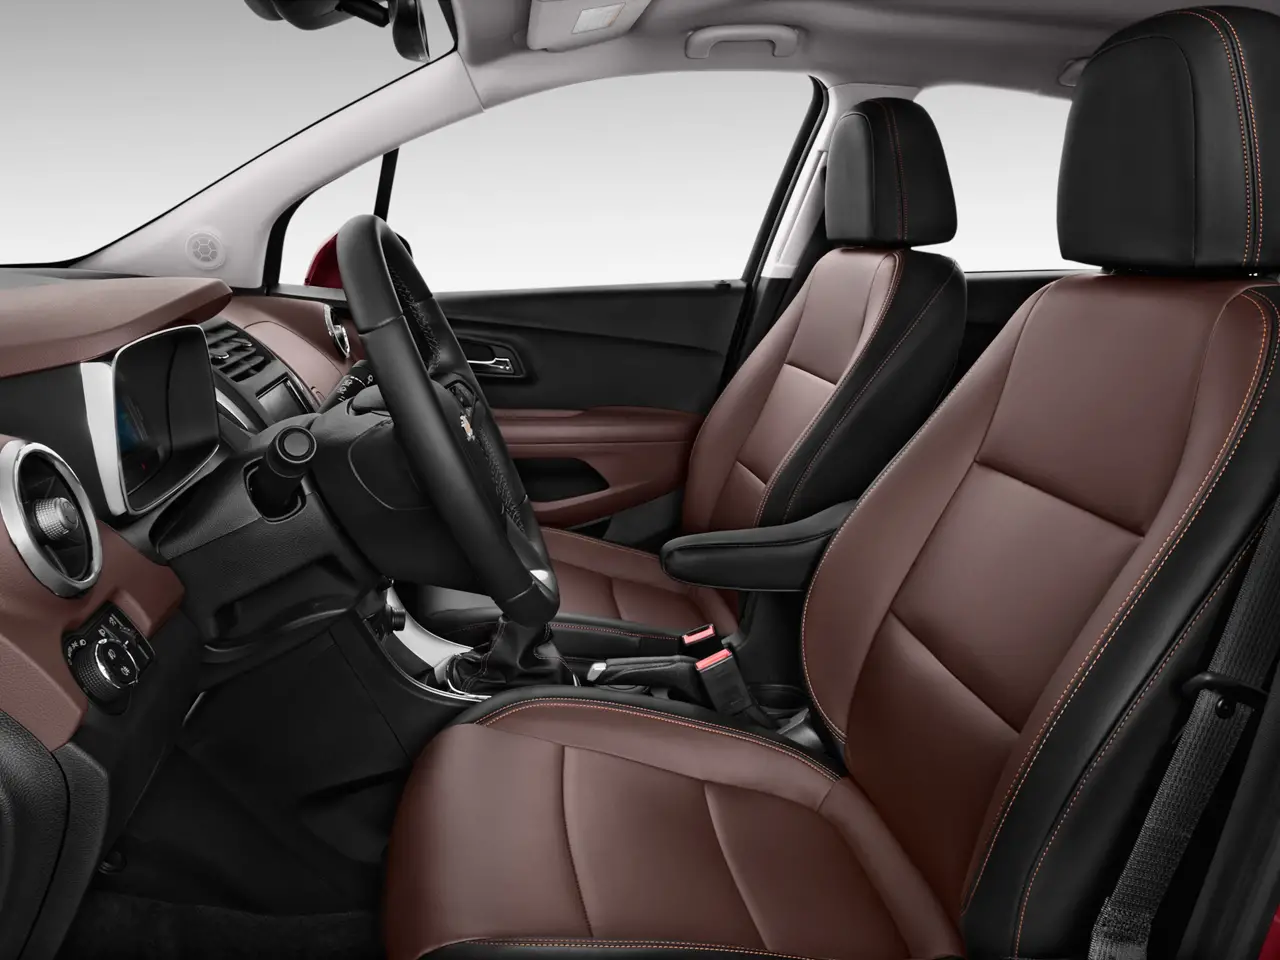 Chevrolet Trax LTZ 2016 interior seat view